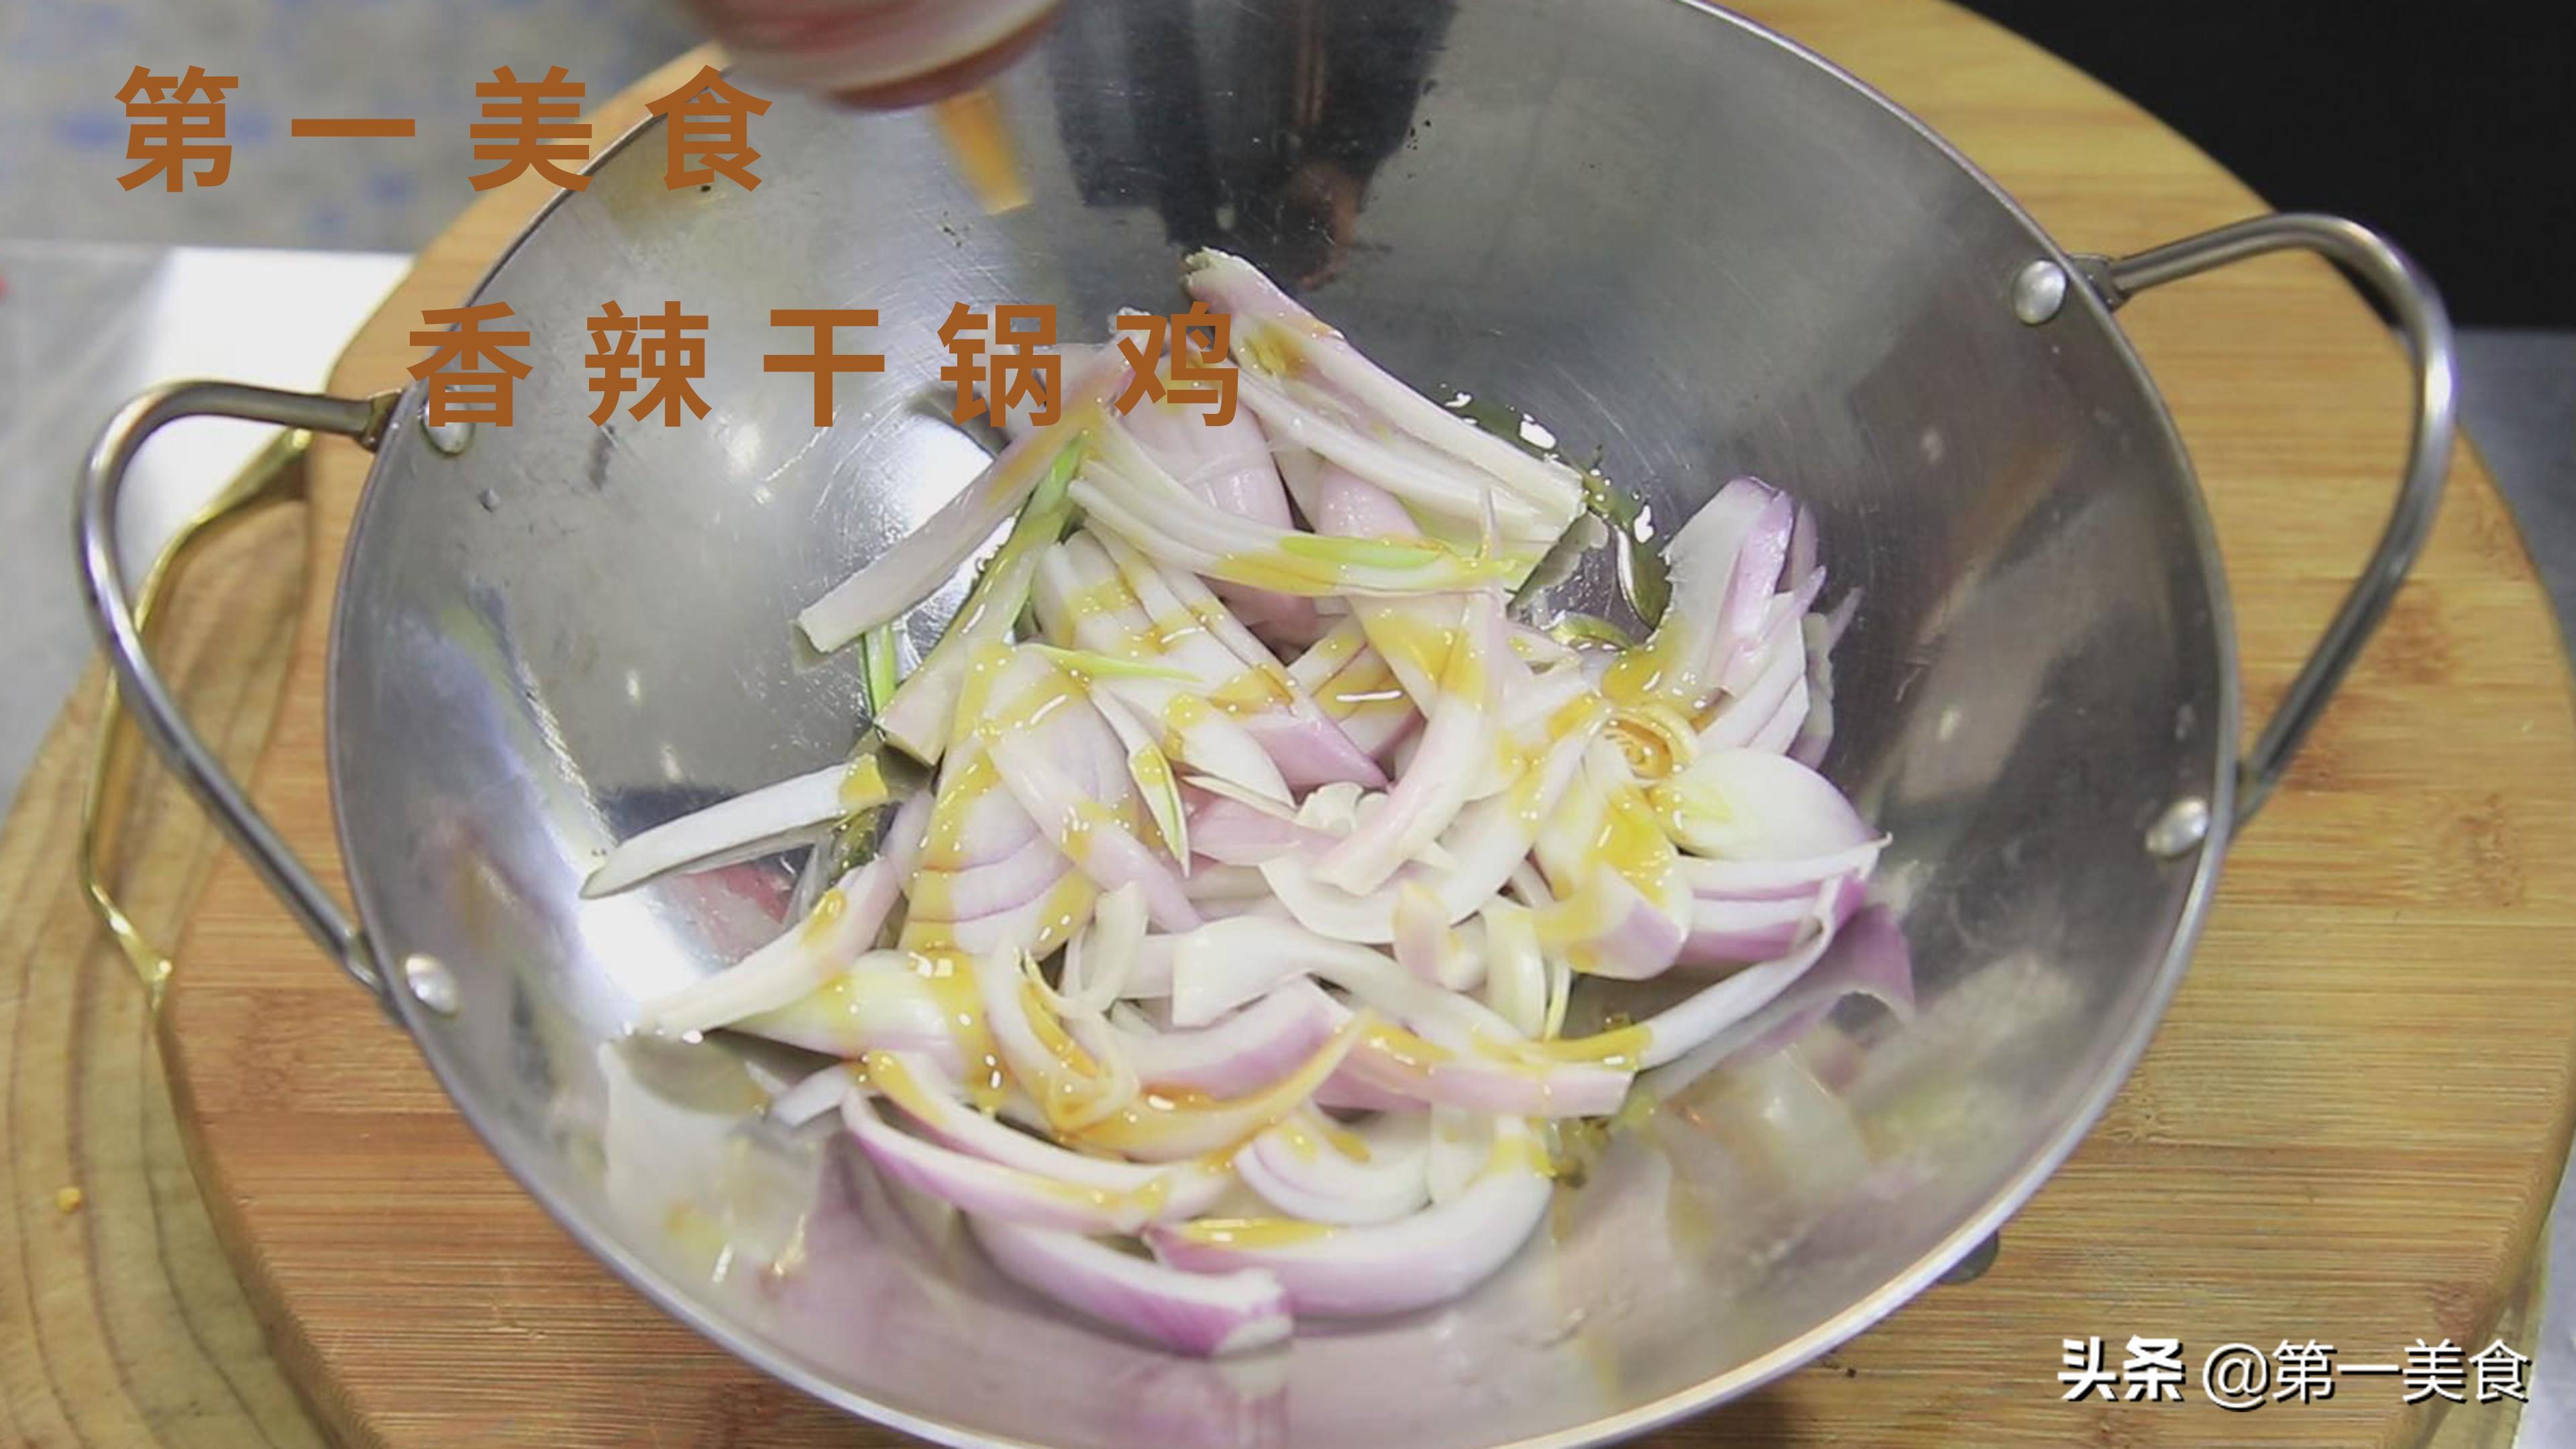 香辣干锅鸡的正宗做法分享，用料简单味道足，真解馋